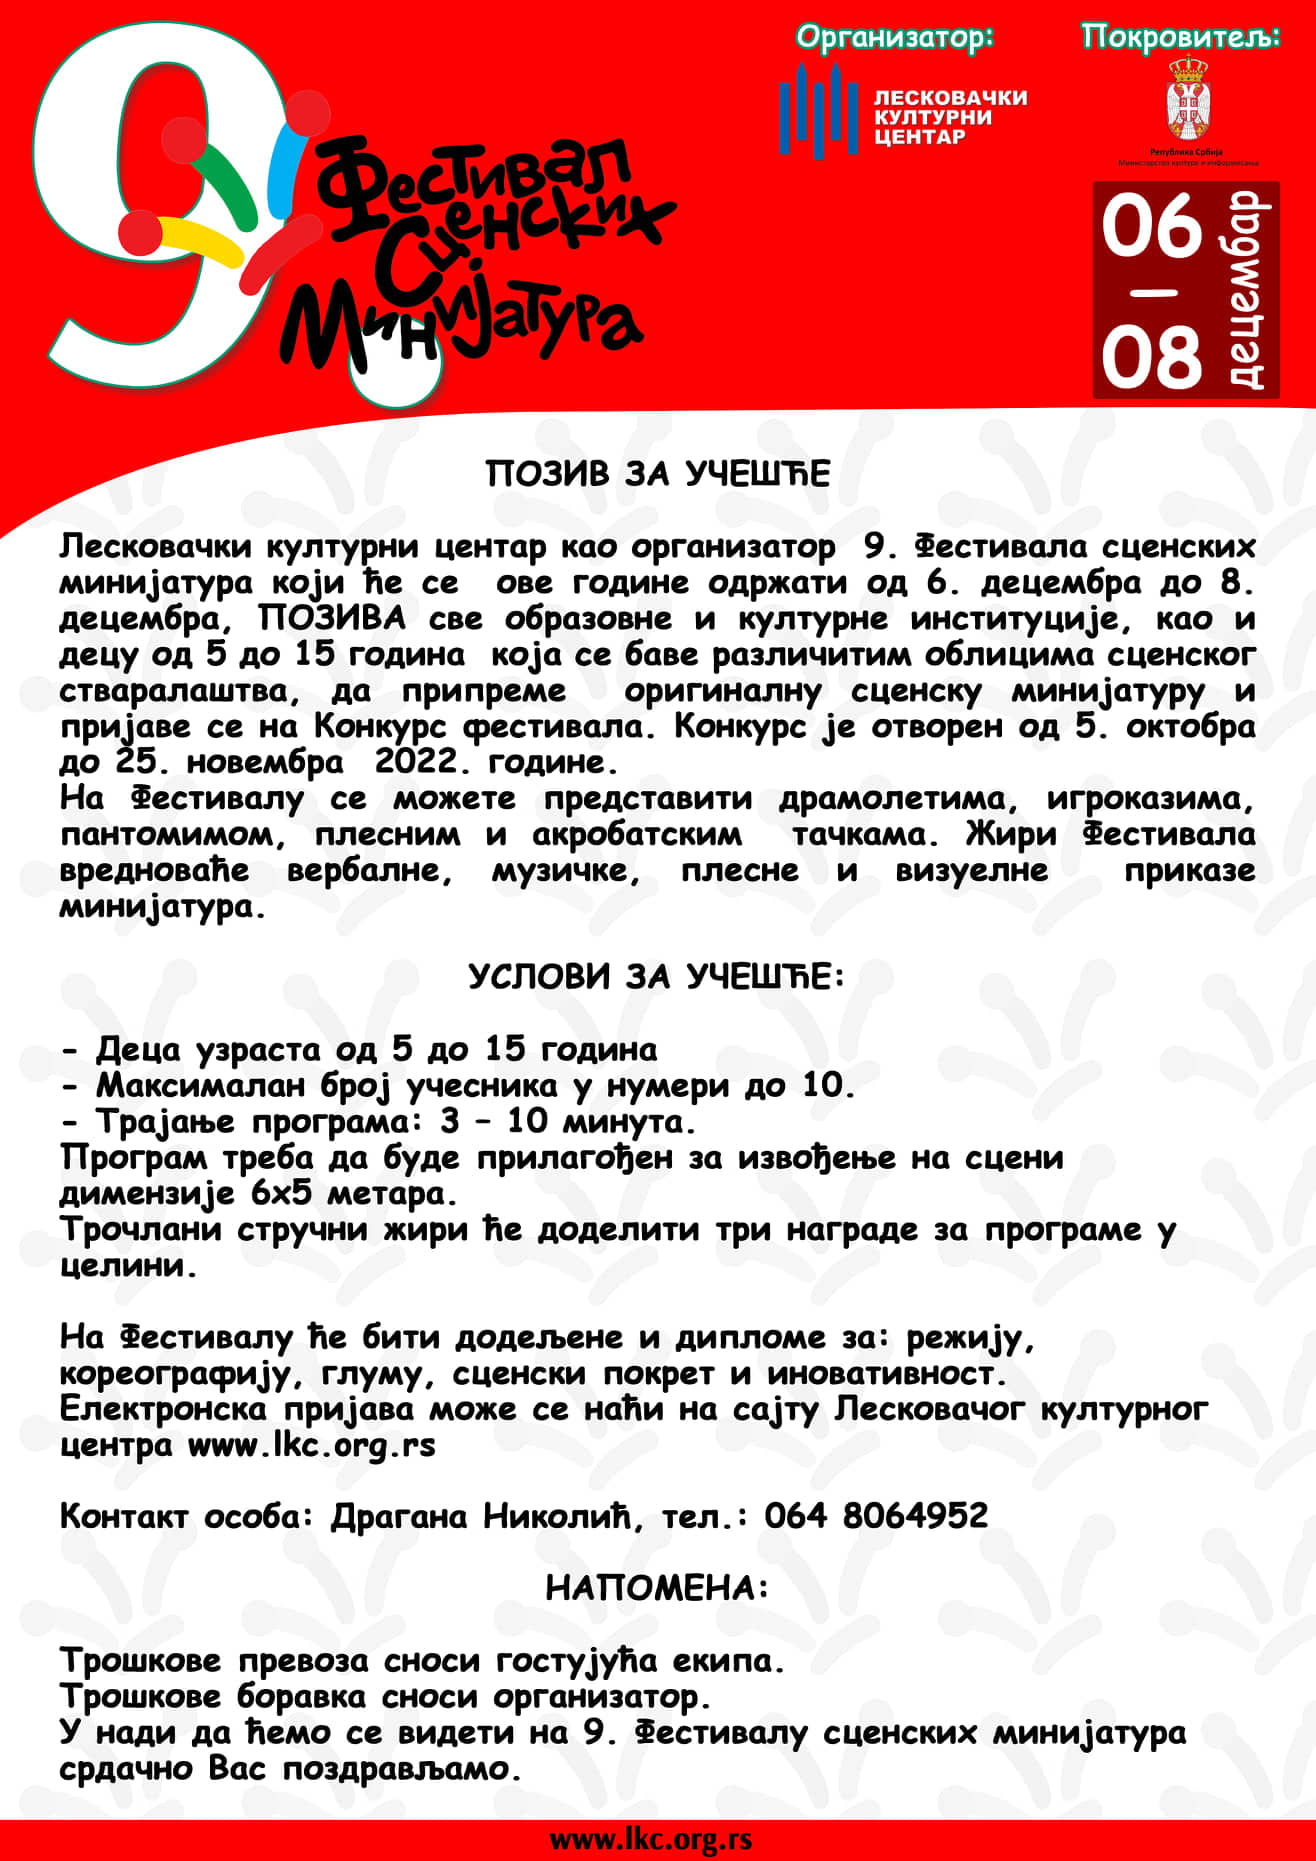 Image of 9. Фестивал Сценских Минијатура event